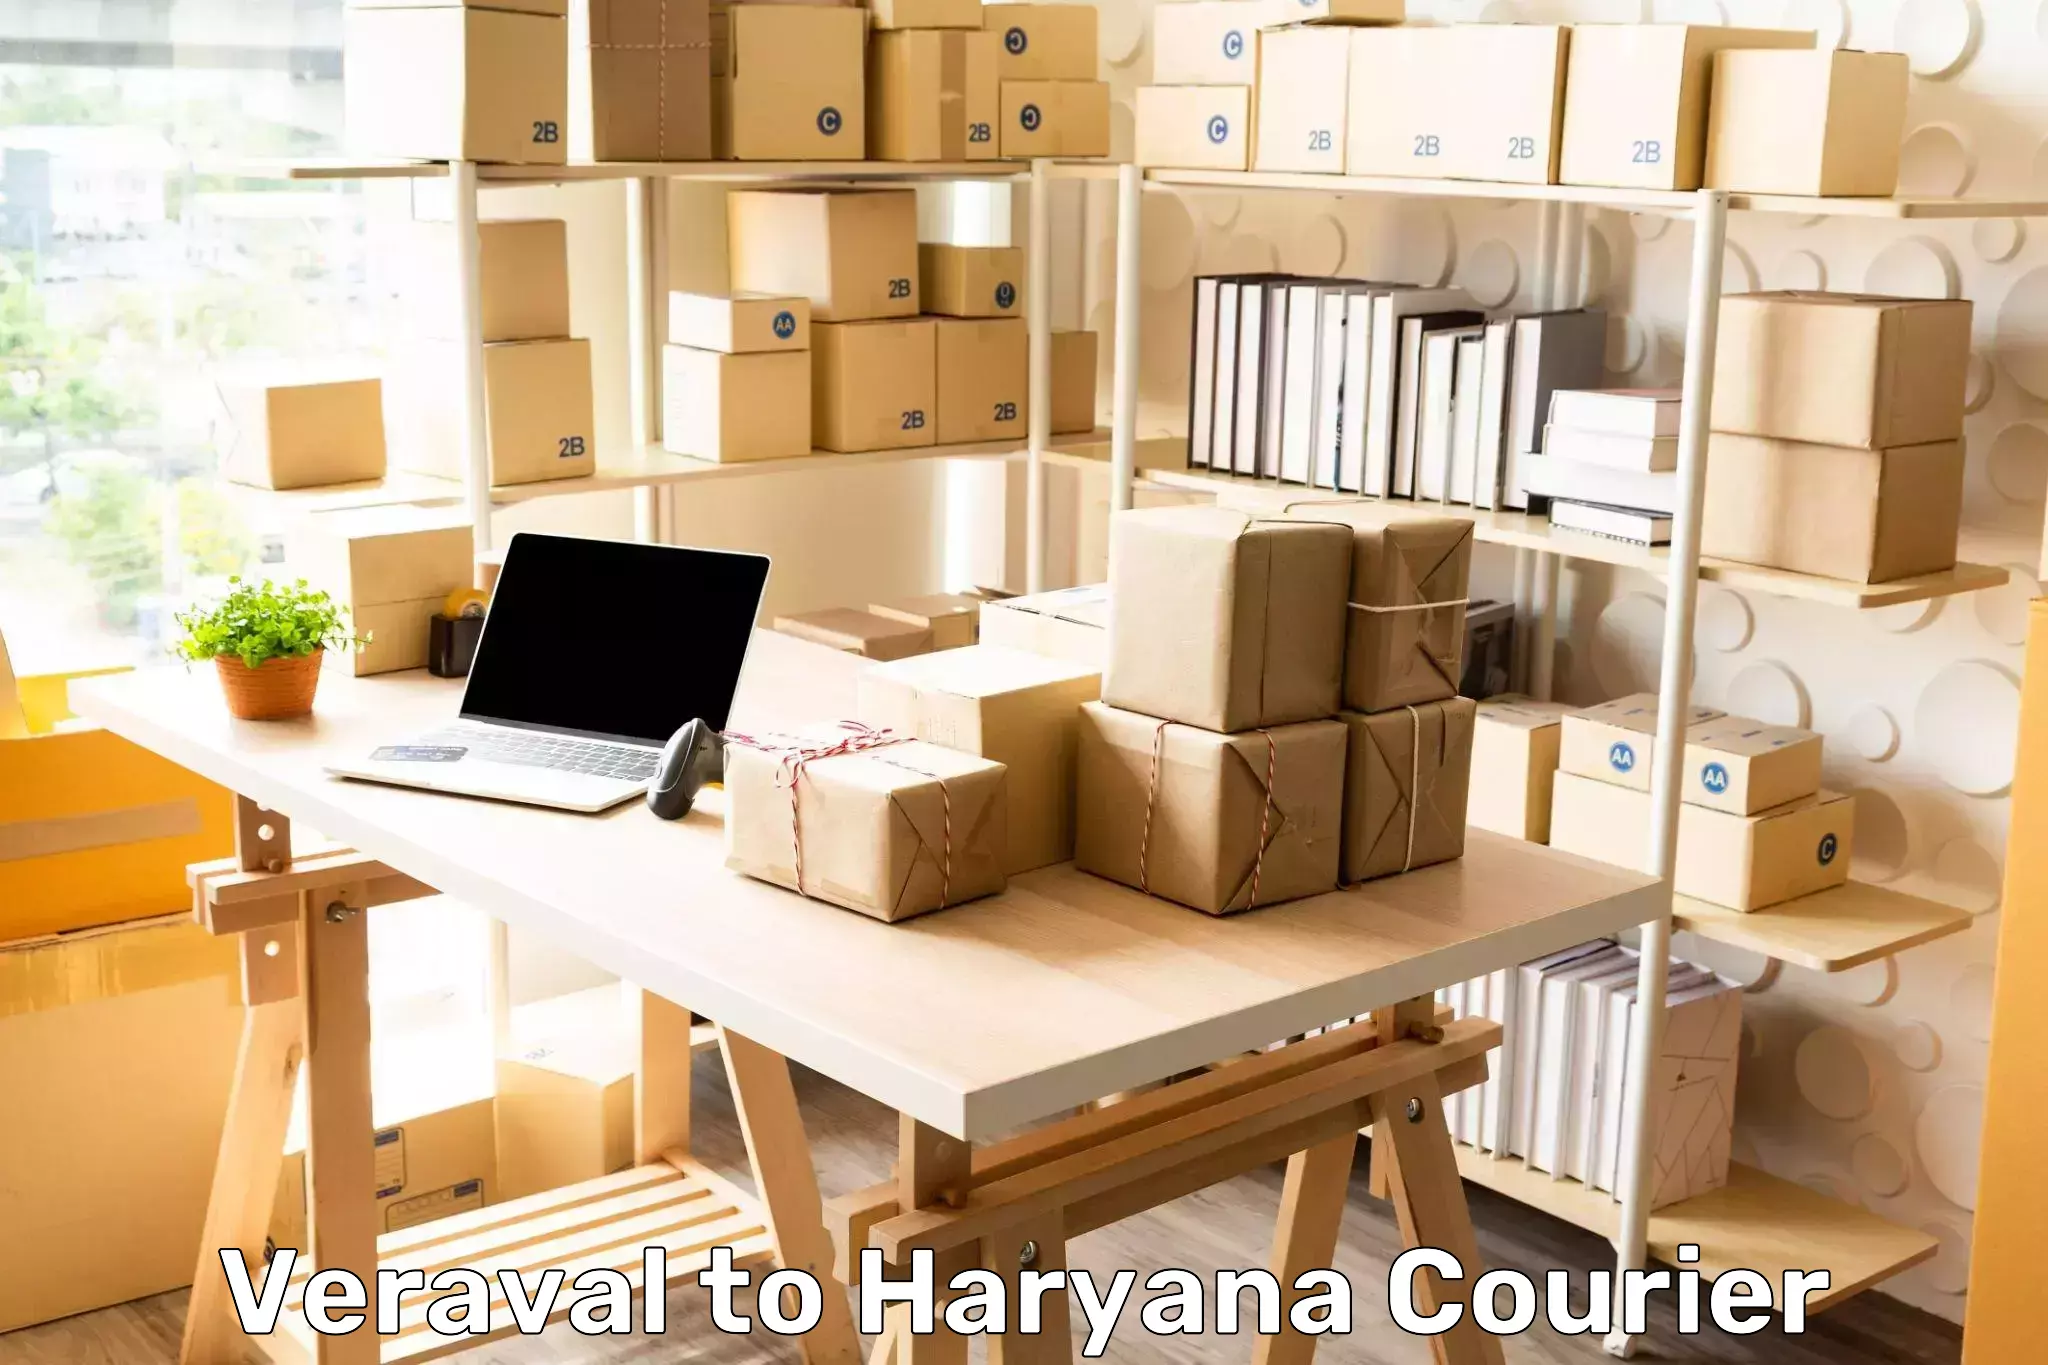 Courier service partnerships Veraval to Shahabad Markanda